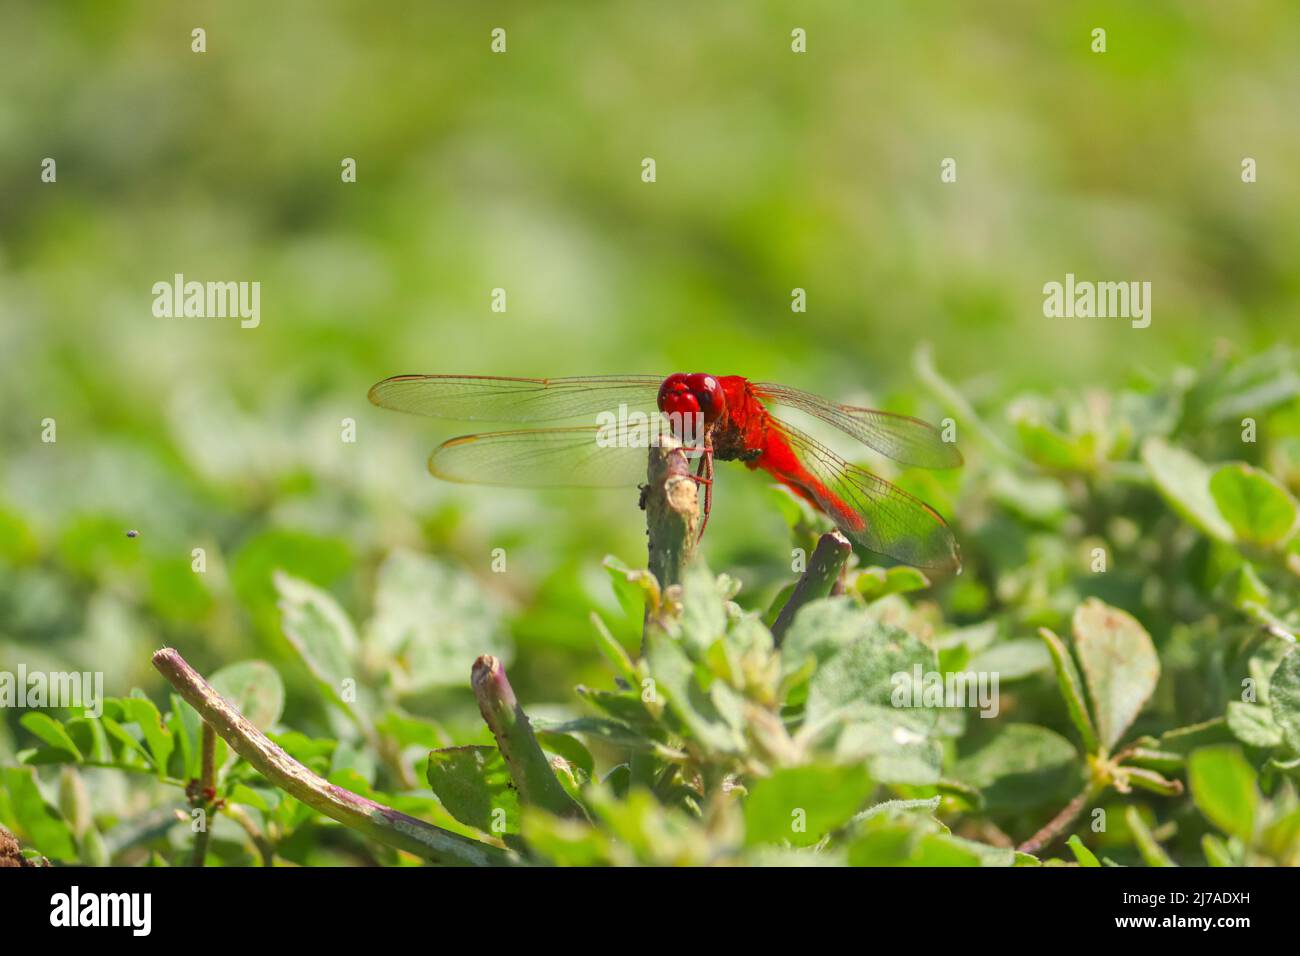 Escarlata Percher libélula sosteniendo sobre una planta con la piel de la traga Foto de stock